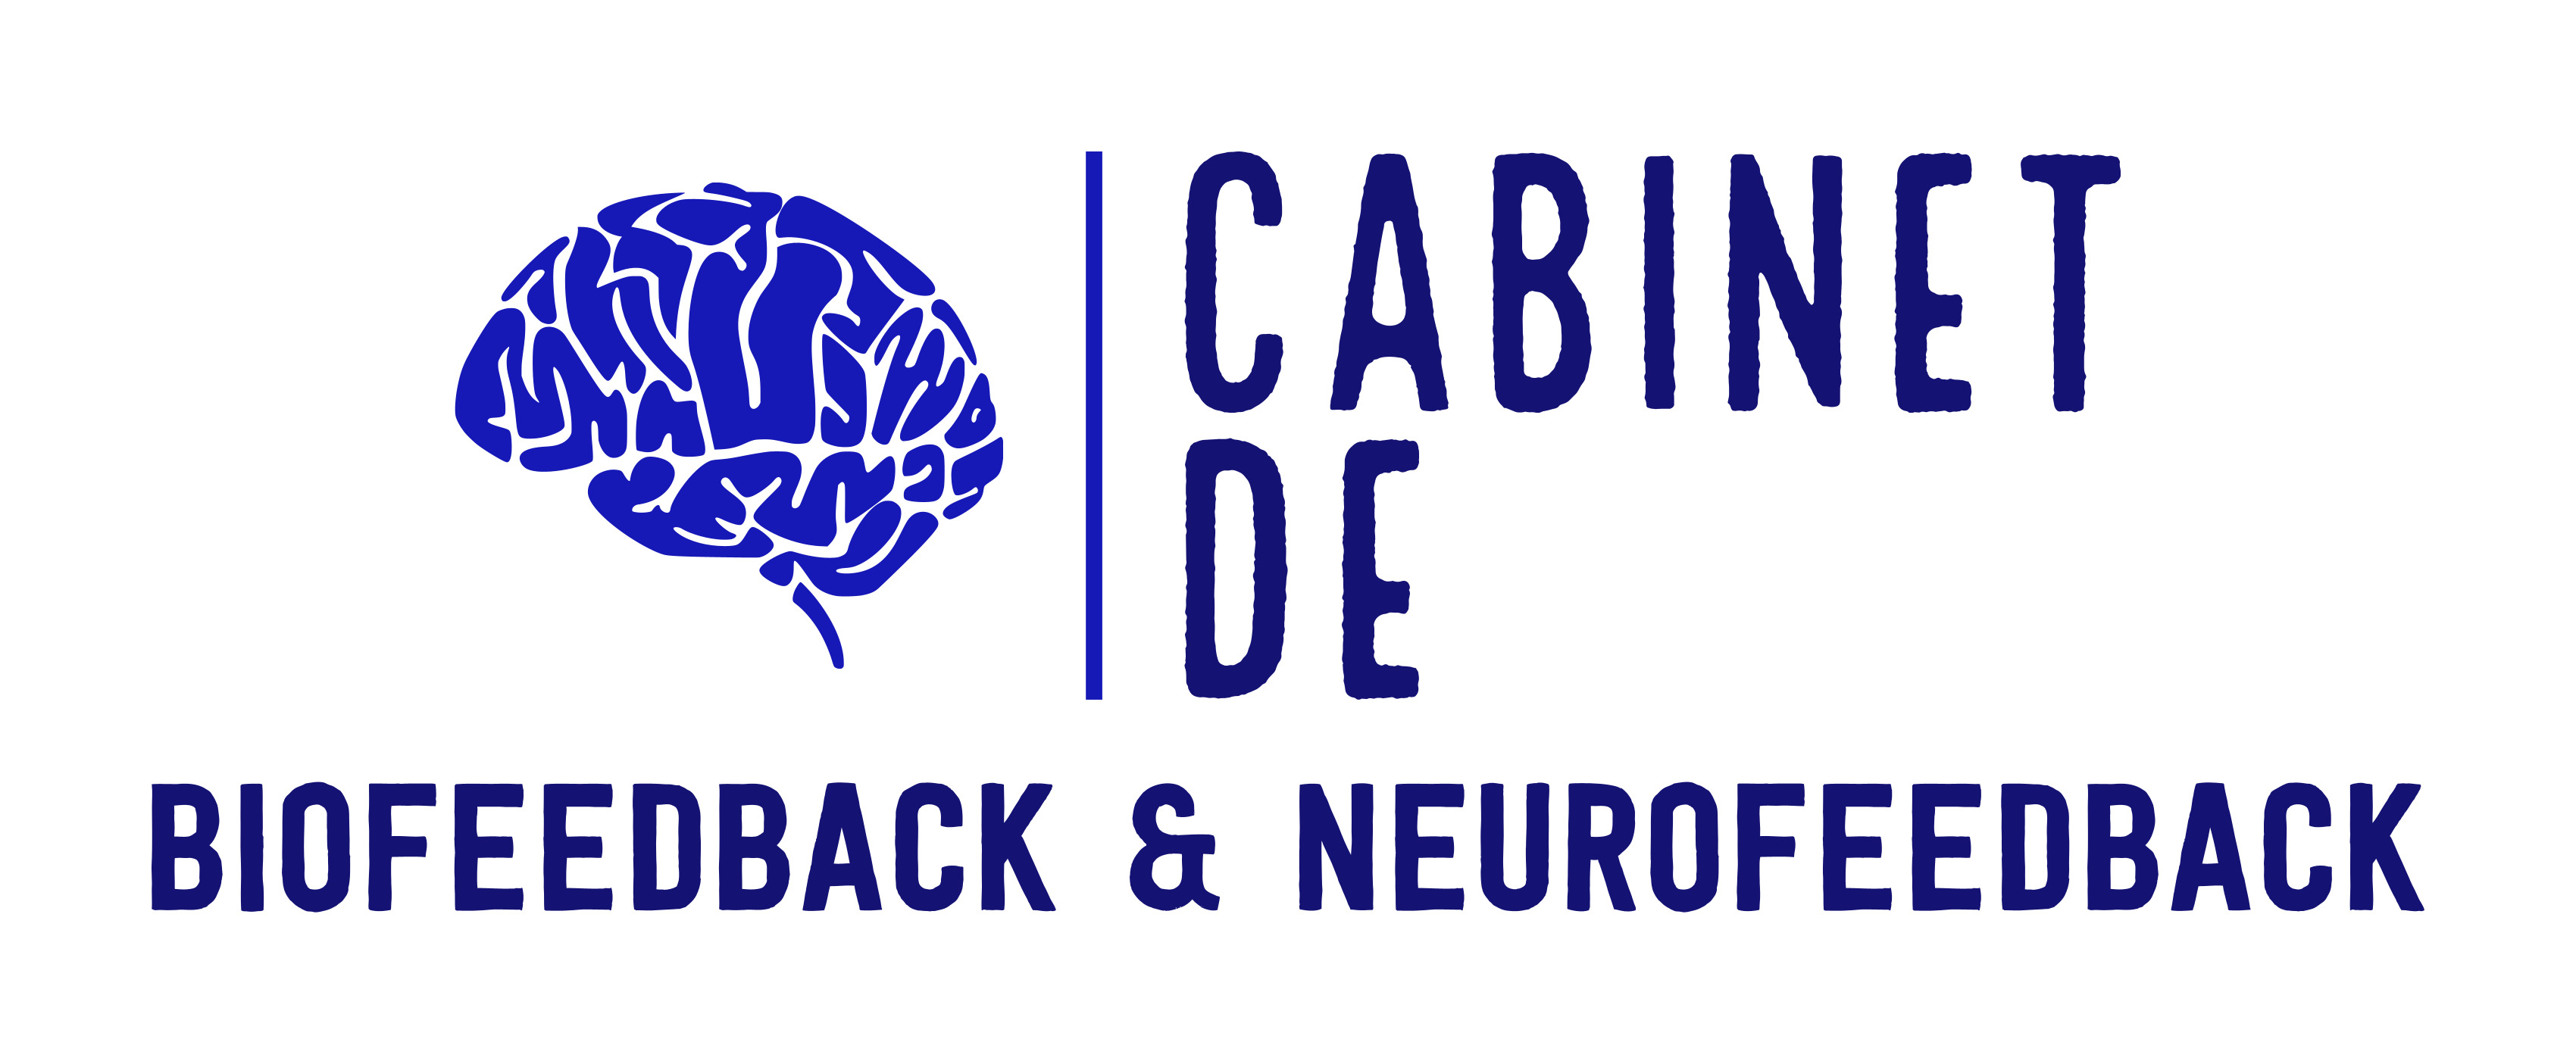 Biofeedback & Neurofeedback